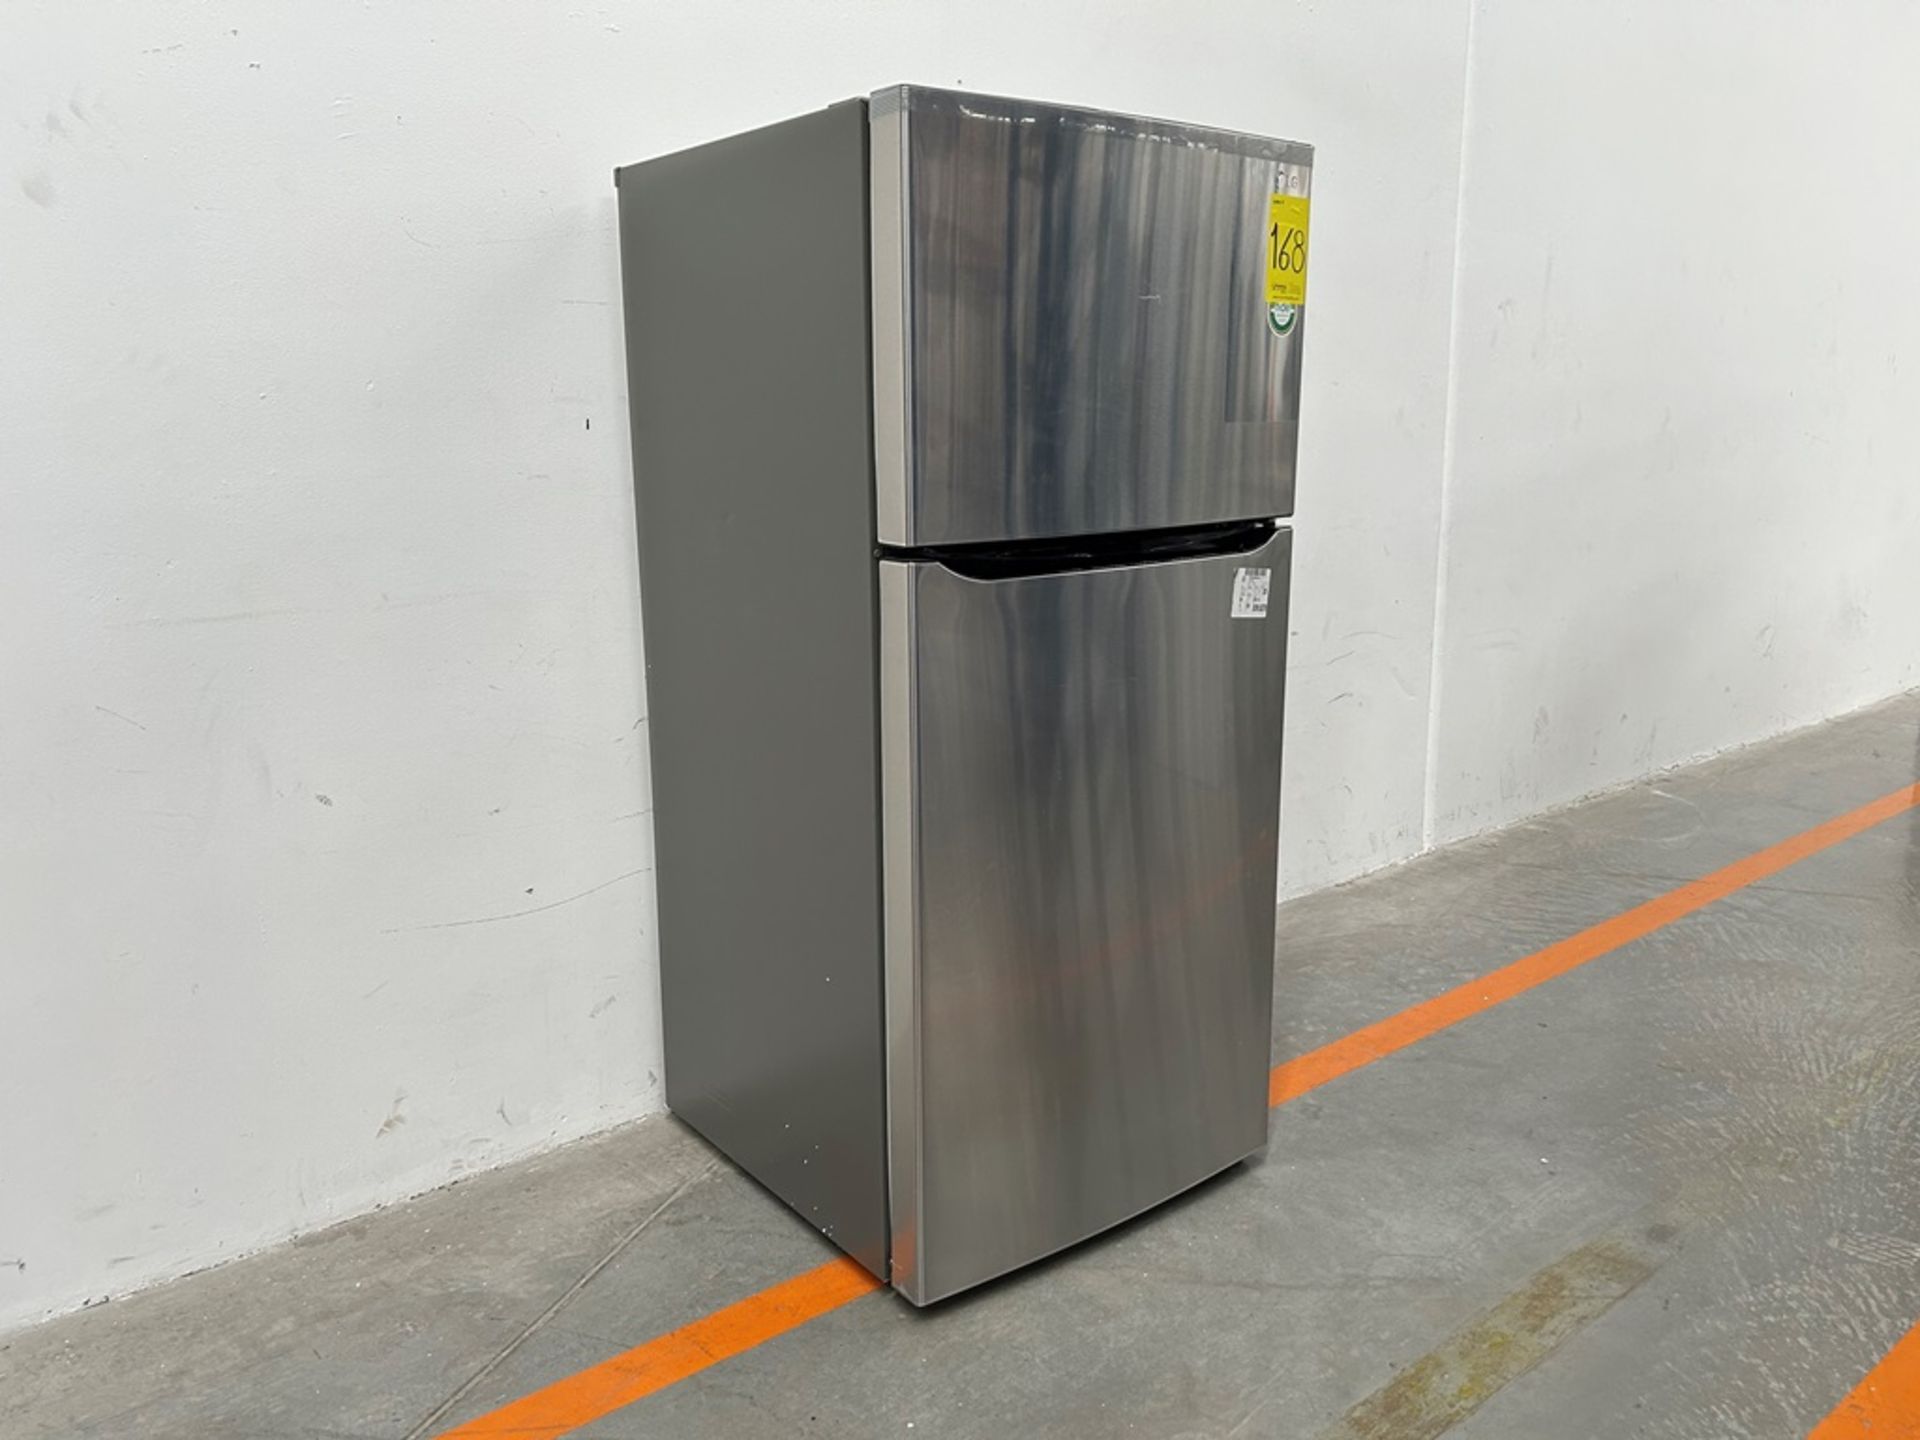 (NUEVO) Refrigerador Marca LG, Modelo LT57BPSX, Serie 29679, Color GRIS - Image 3 of 11